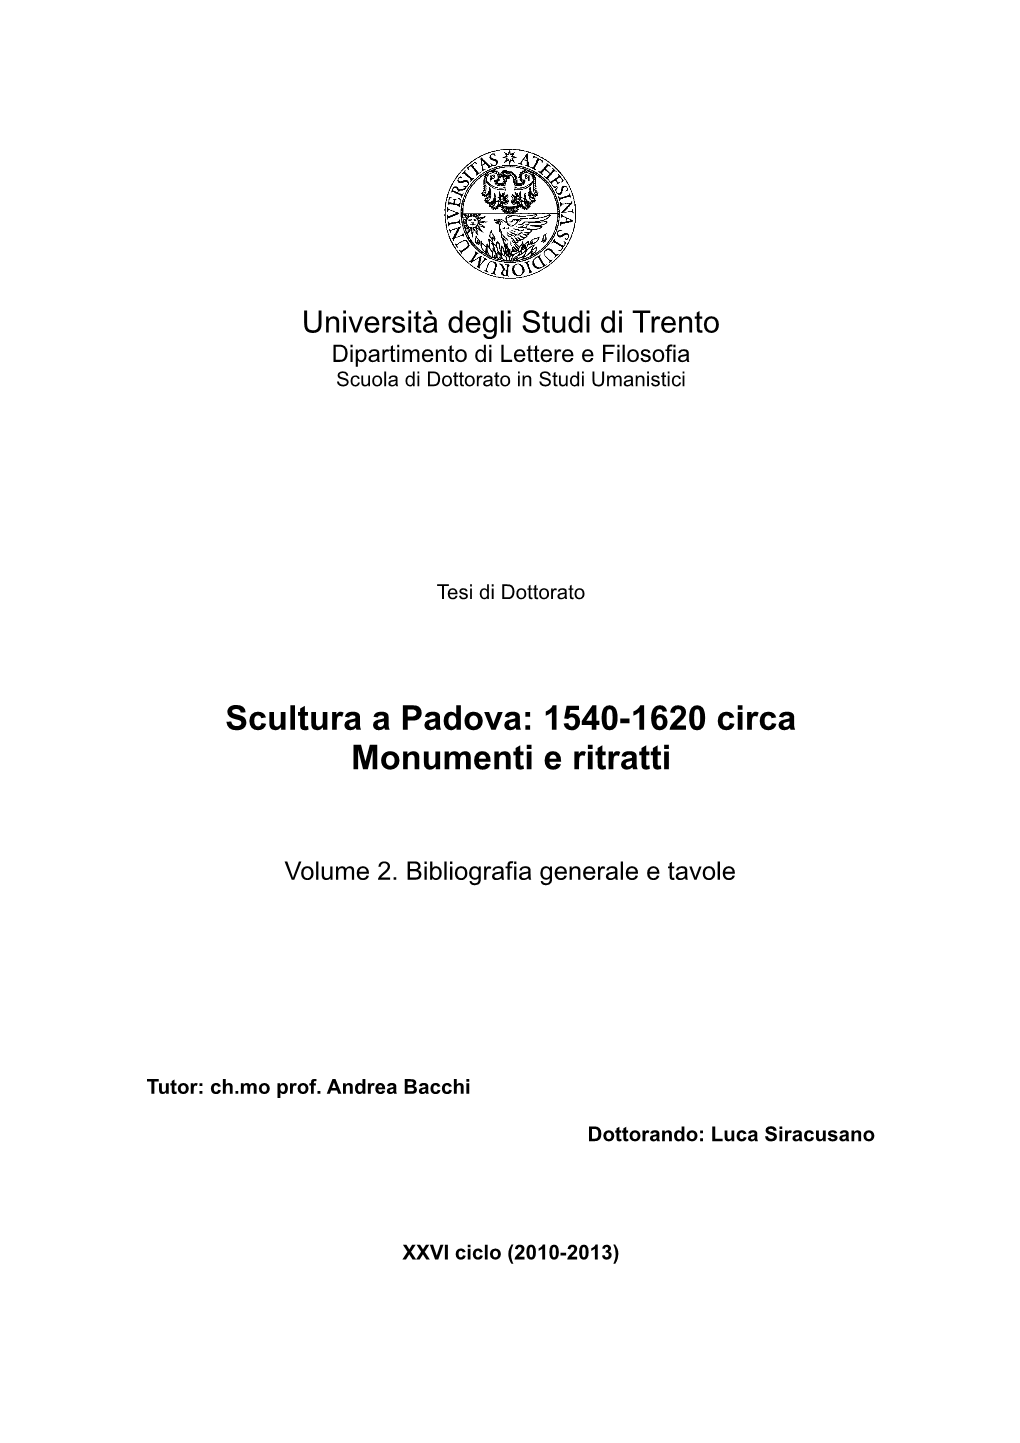 Scultura a Padova: 1540-1620 Circa Monumenti E Ritratti